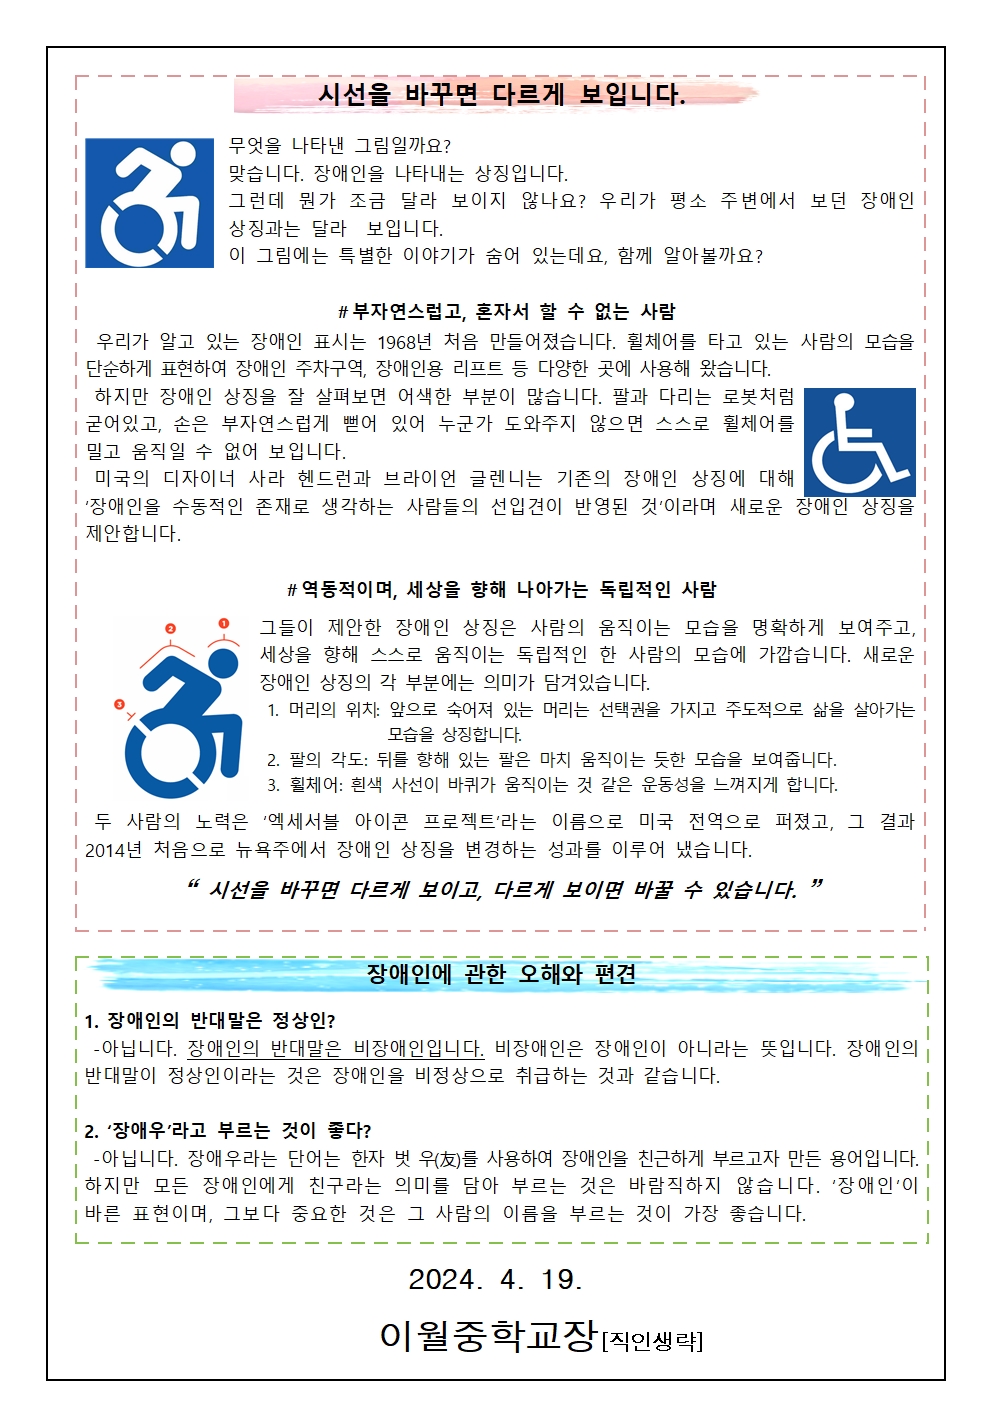 장애이해 및 장애인식개선교육 가정통신문002